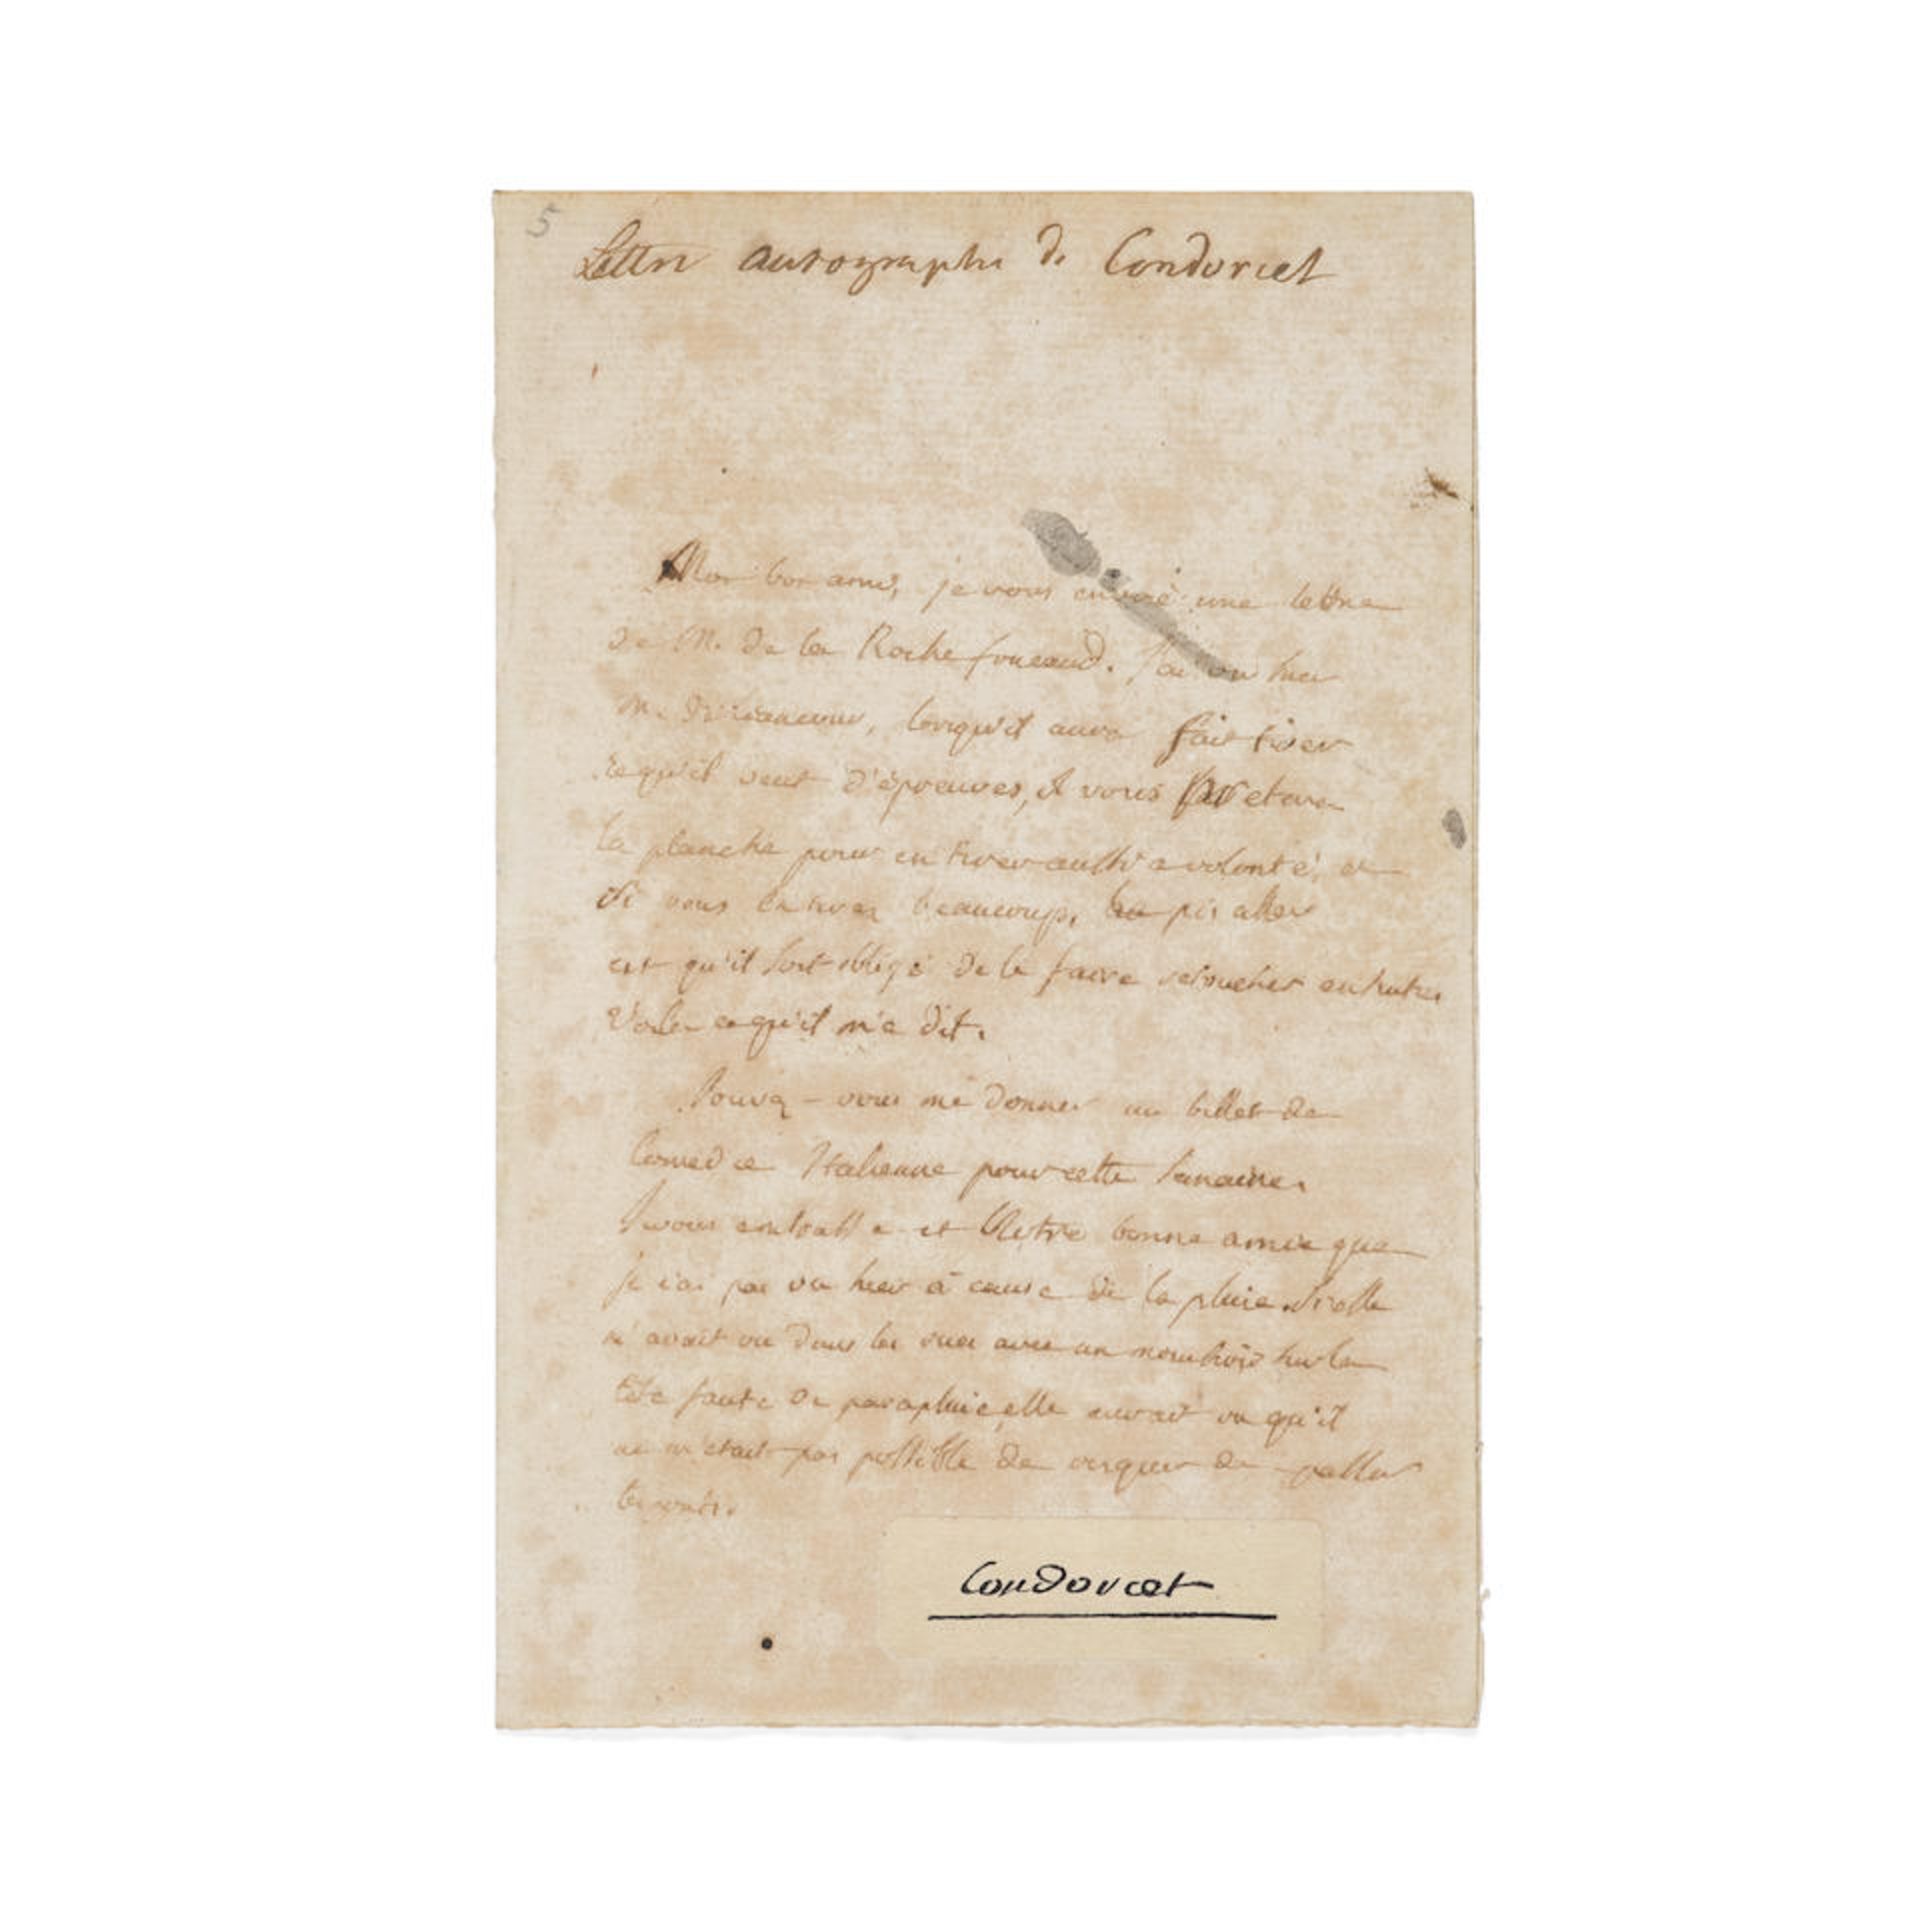 CONDORCET, MARIE JEAN ANTIONE NICOLAS DE. 1743-1794. Manuscript letter with applied facsimile si...